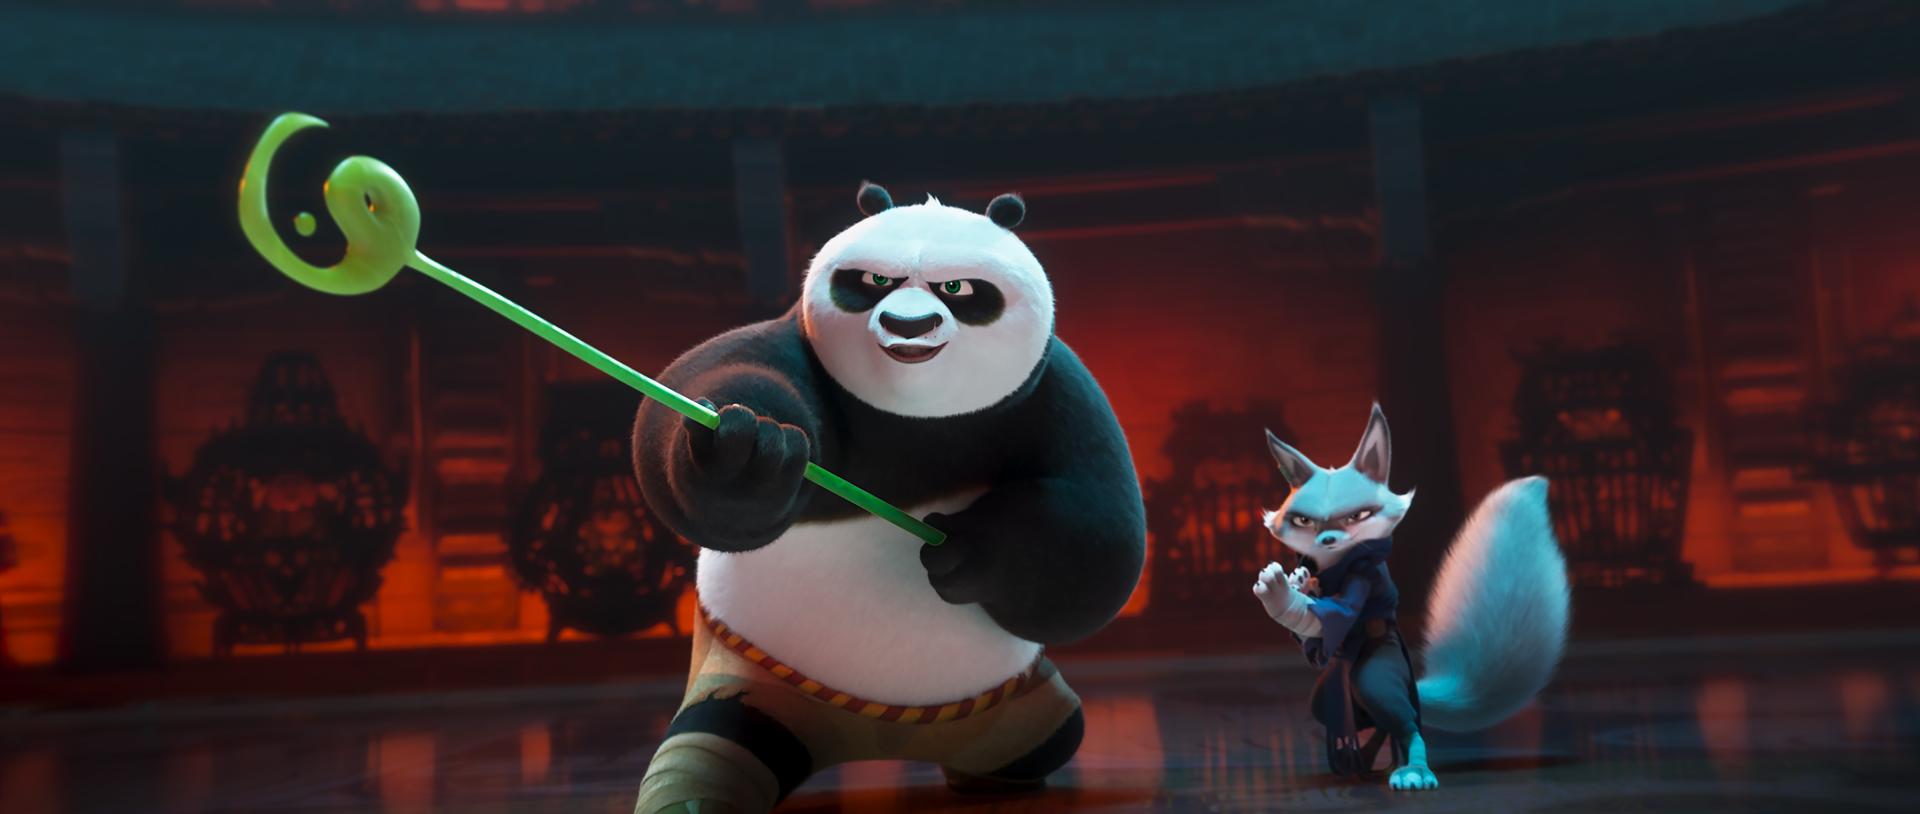 Bilder aus Kung Fu Panda 4